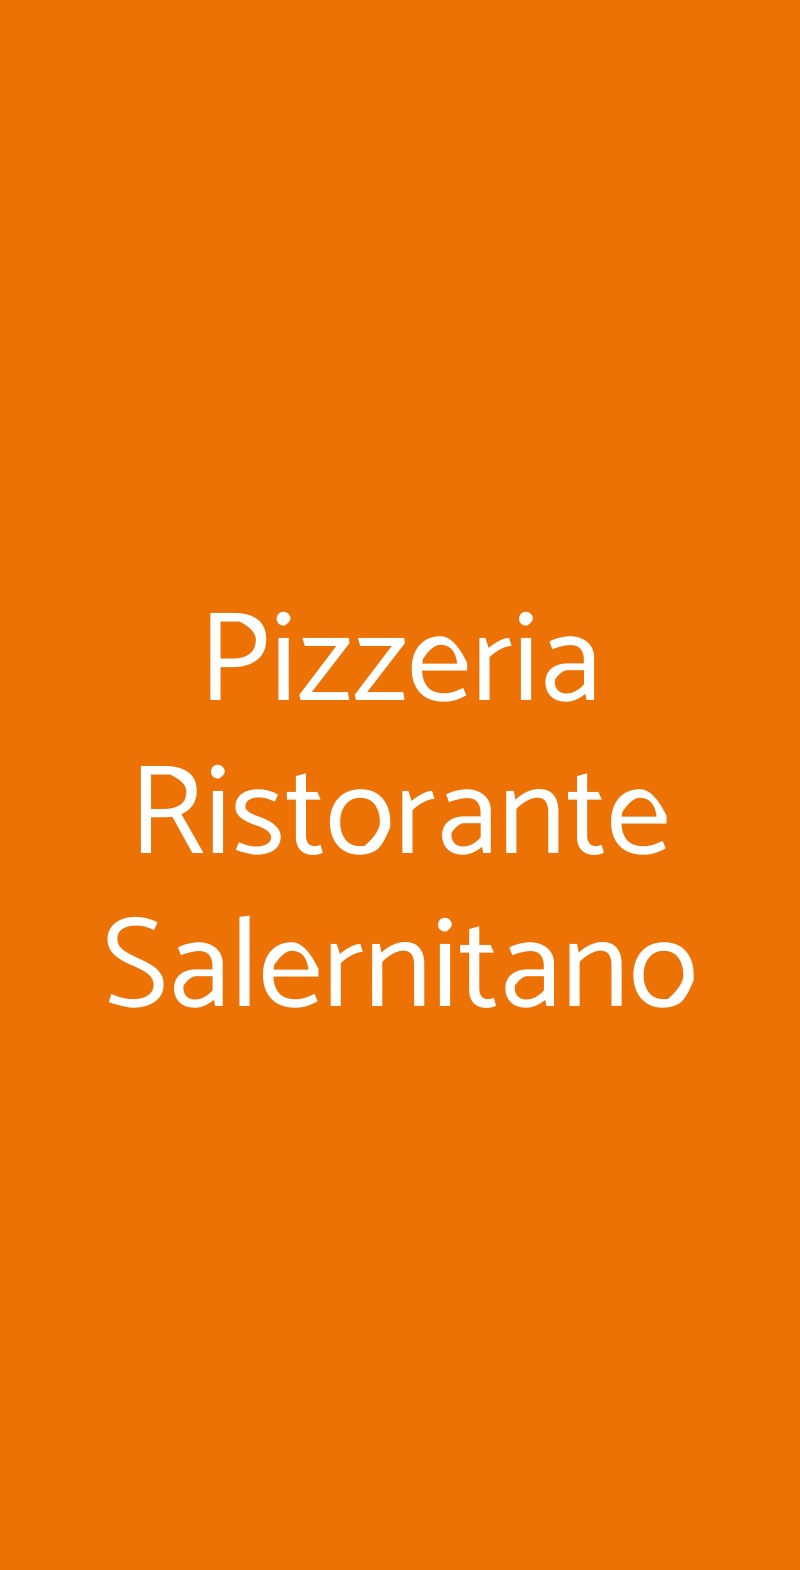 Pizzeria Ristorante Salernitano Milano menù 1 pagina